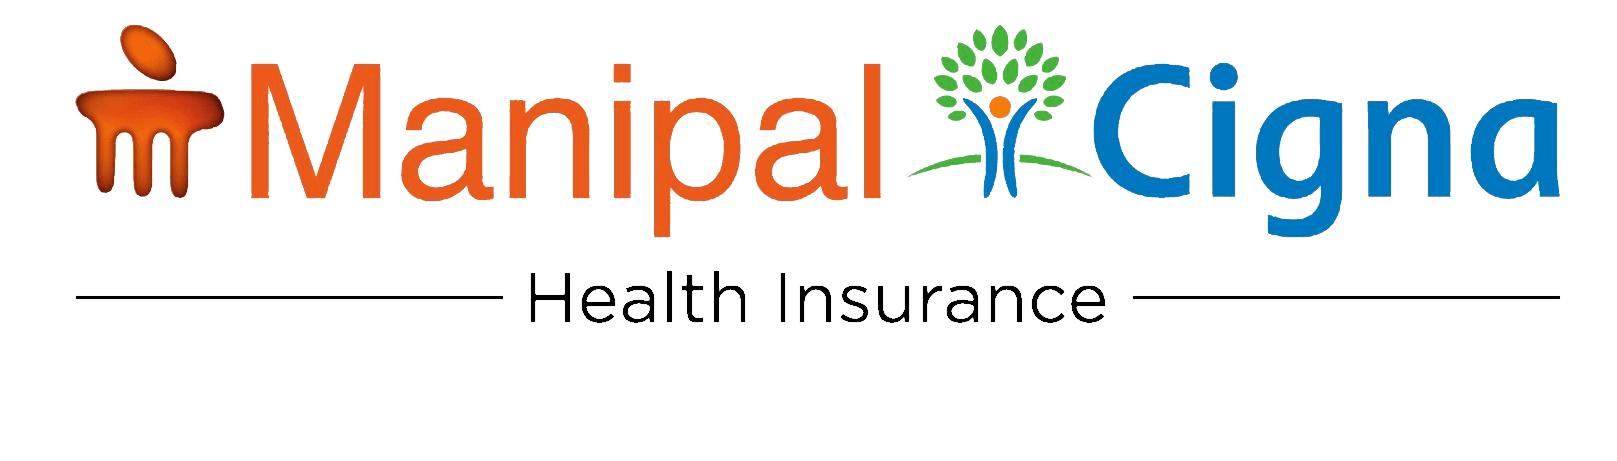 Kotak Mahindra General Insurance